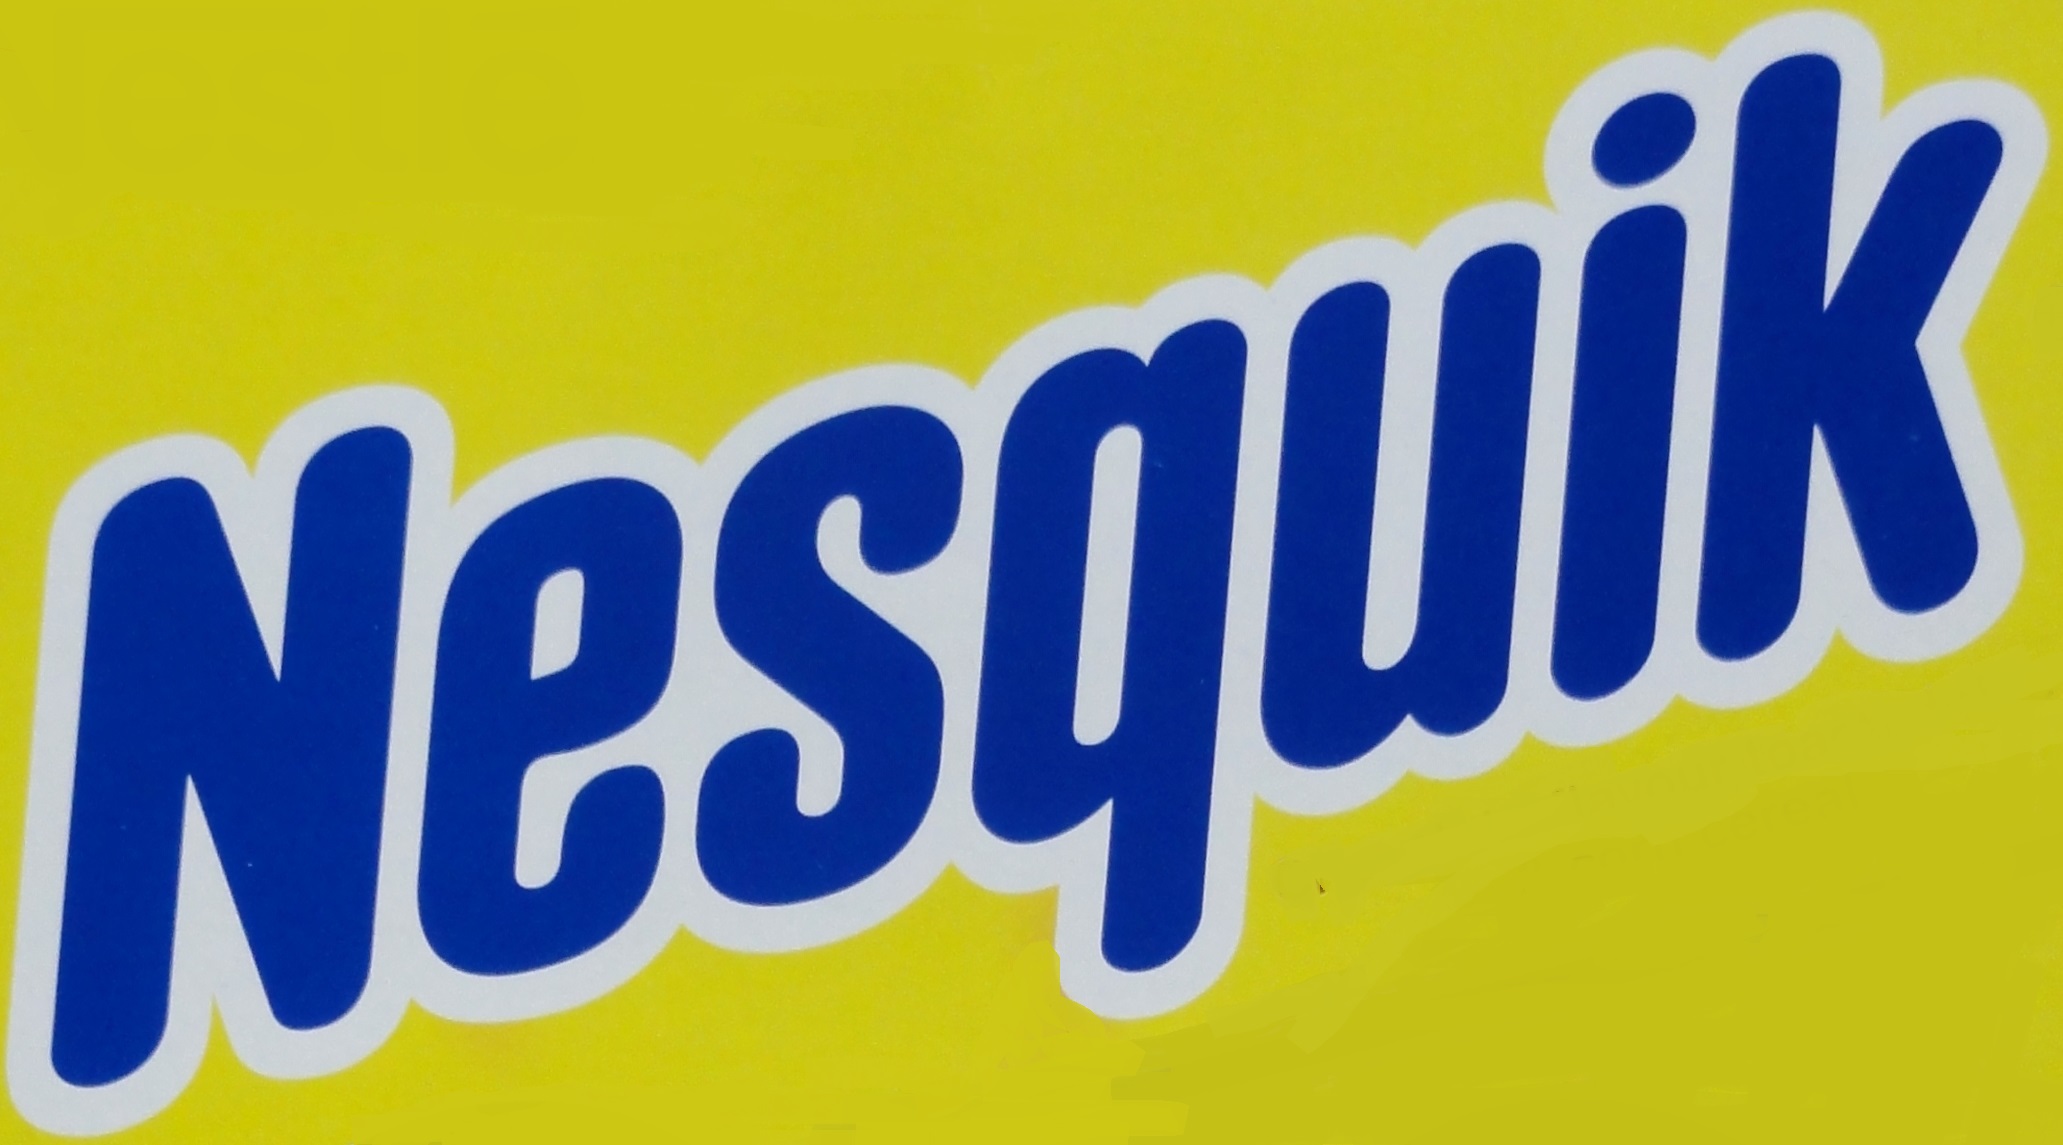 Nesquick logo